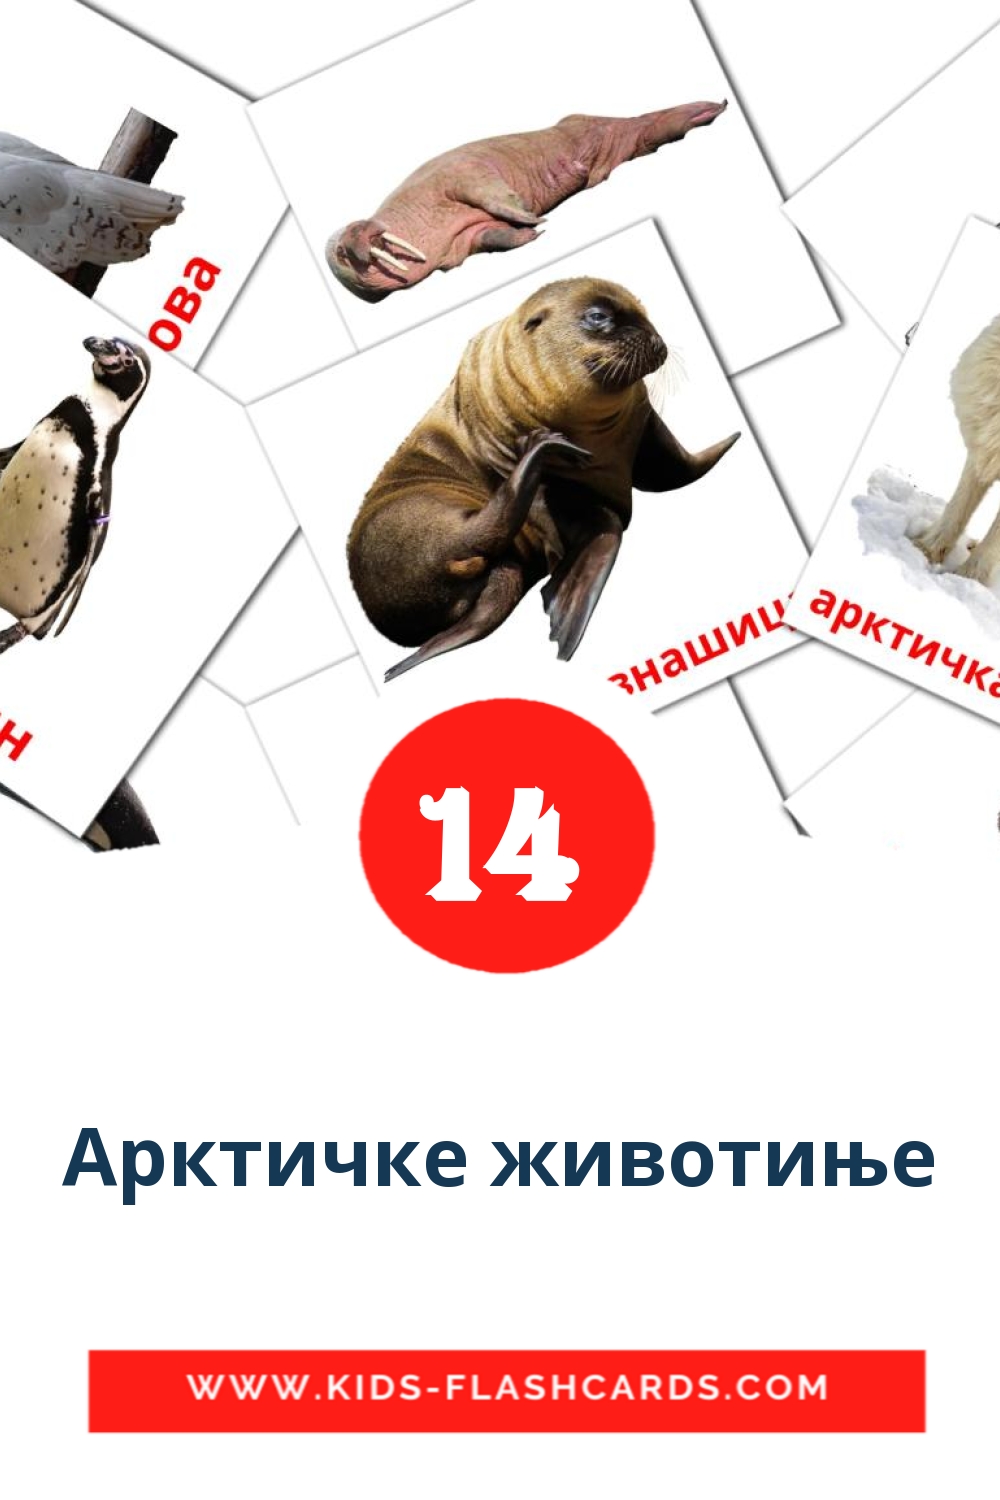 14 Арктичке животиње fotokaarten voor kleuters in het servisch(cyrillisch)